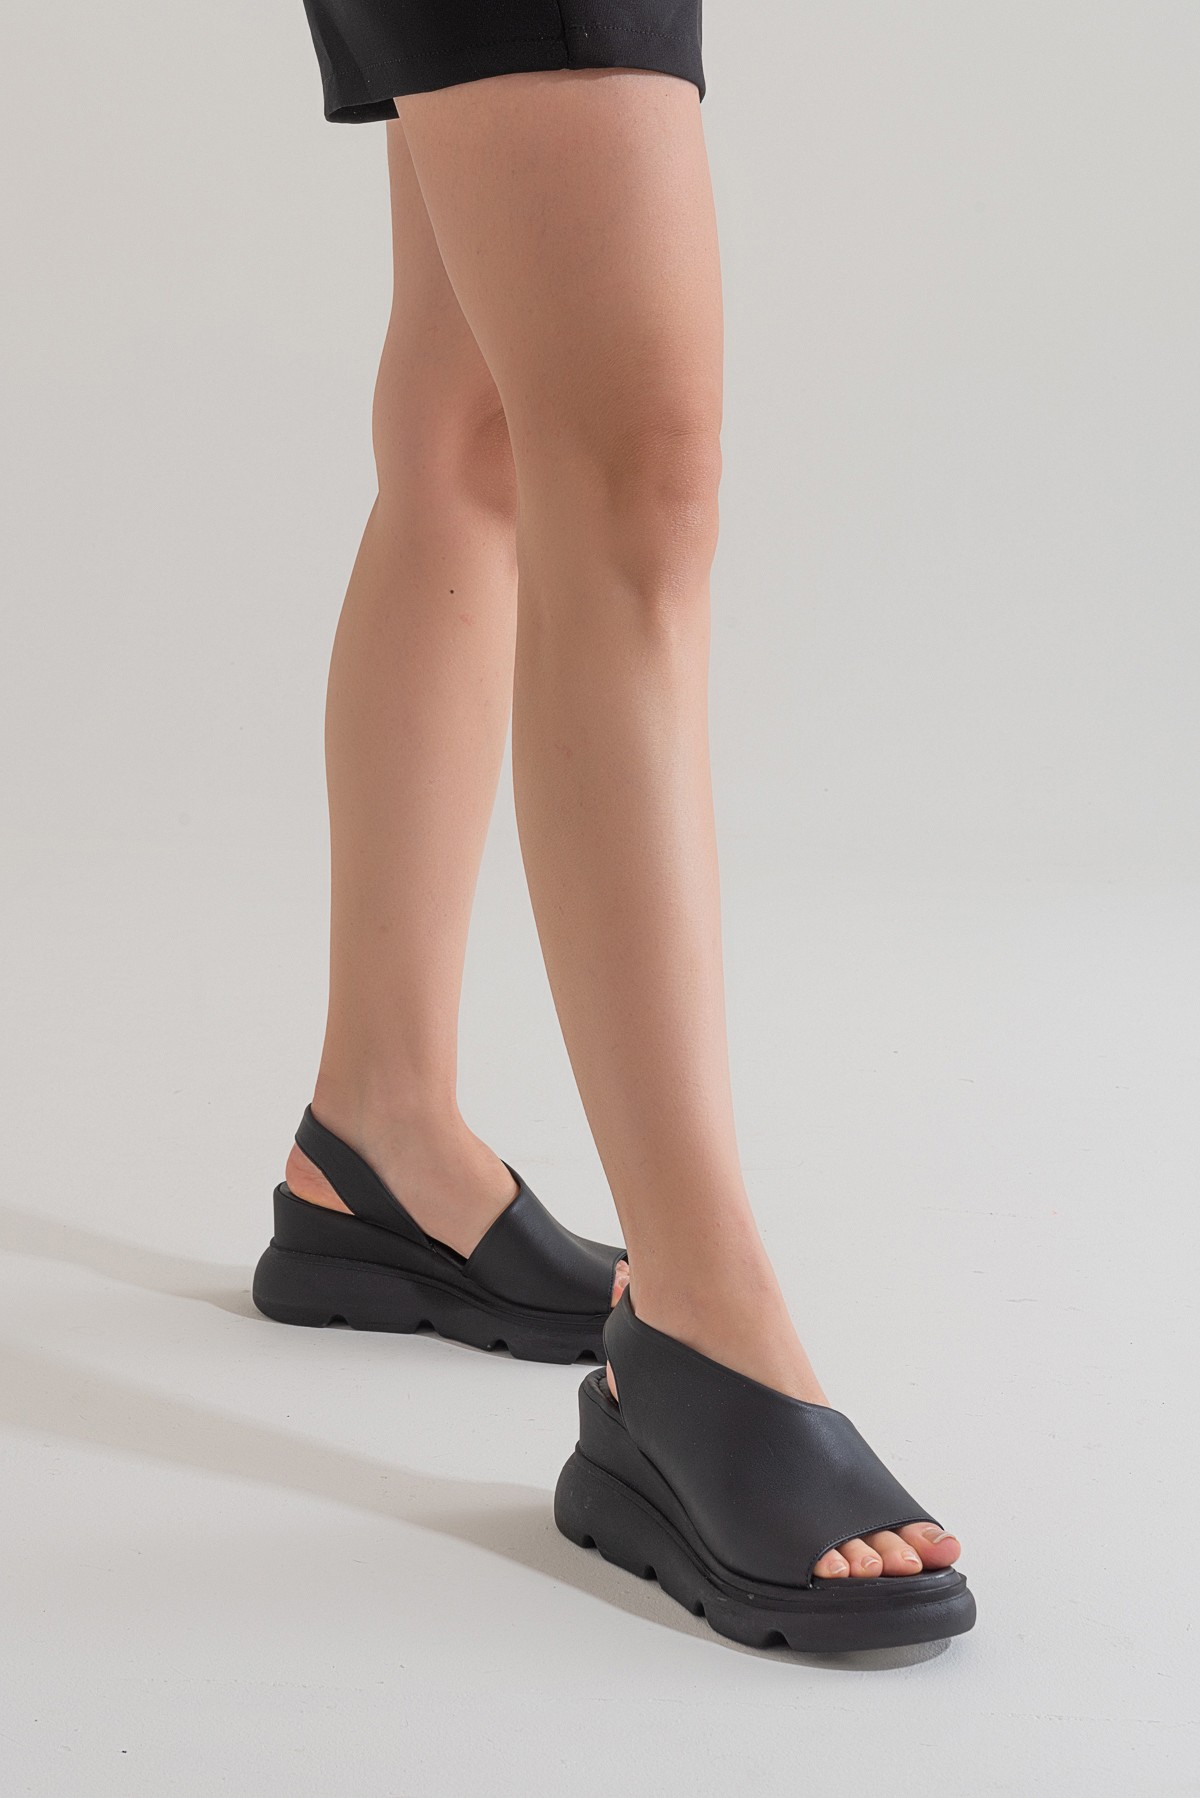 Wella Kadın Dolgu Topuk Sandalet - Siyah